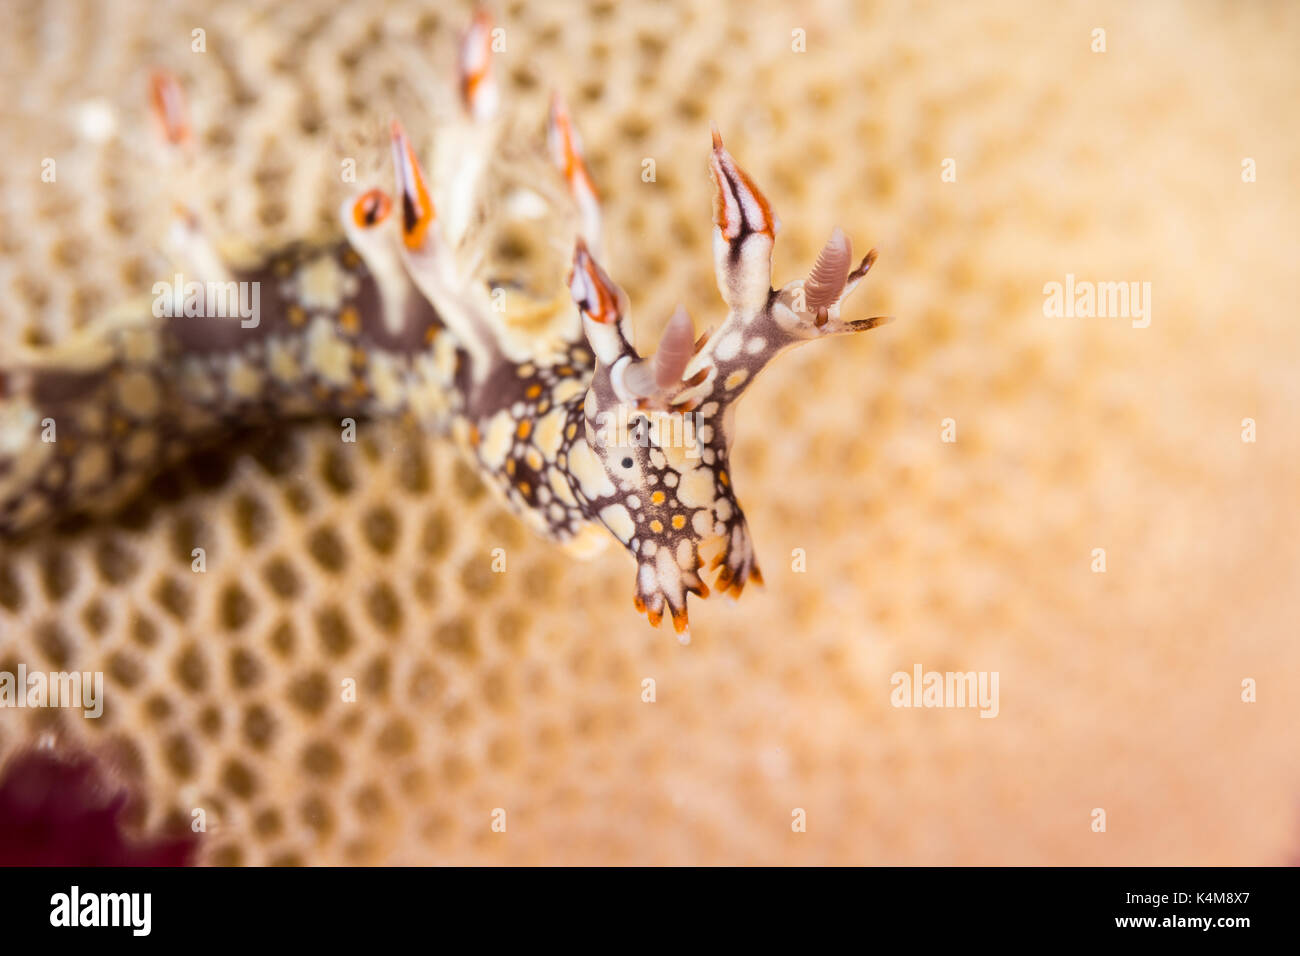 Bornella anguilla, nudibranche, limace de mer sur la barrière de corail Banque D'Images